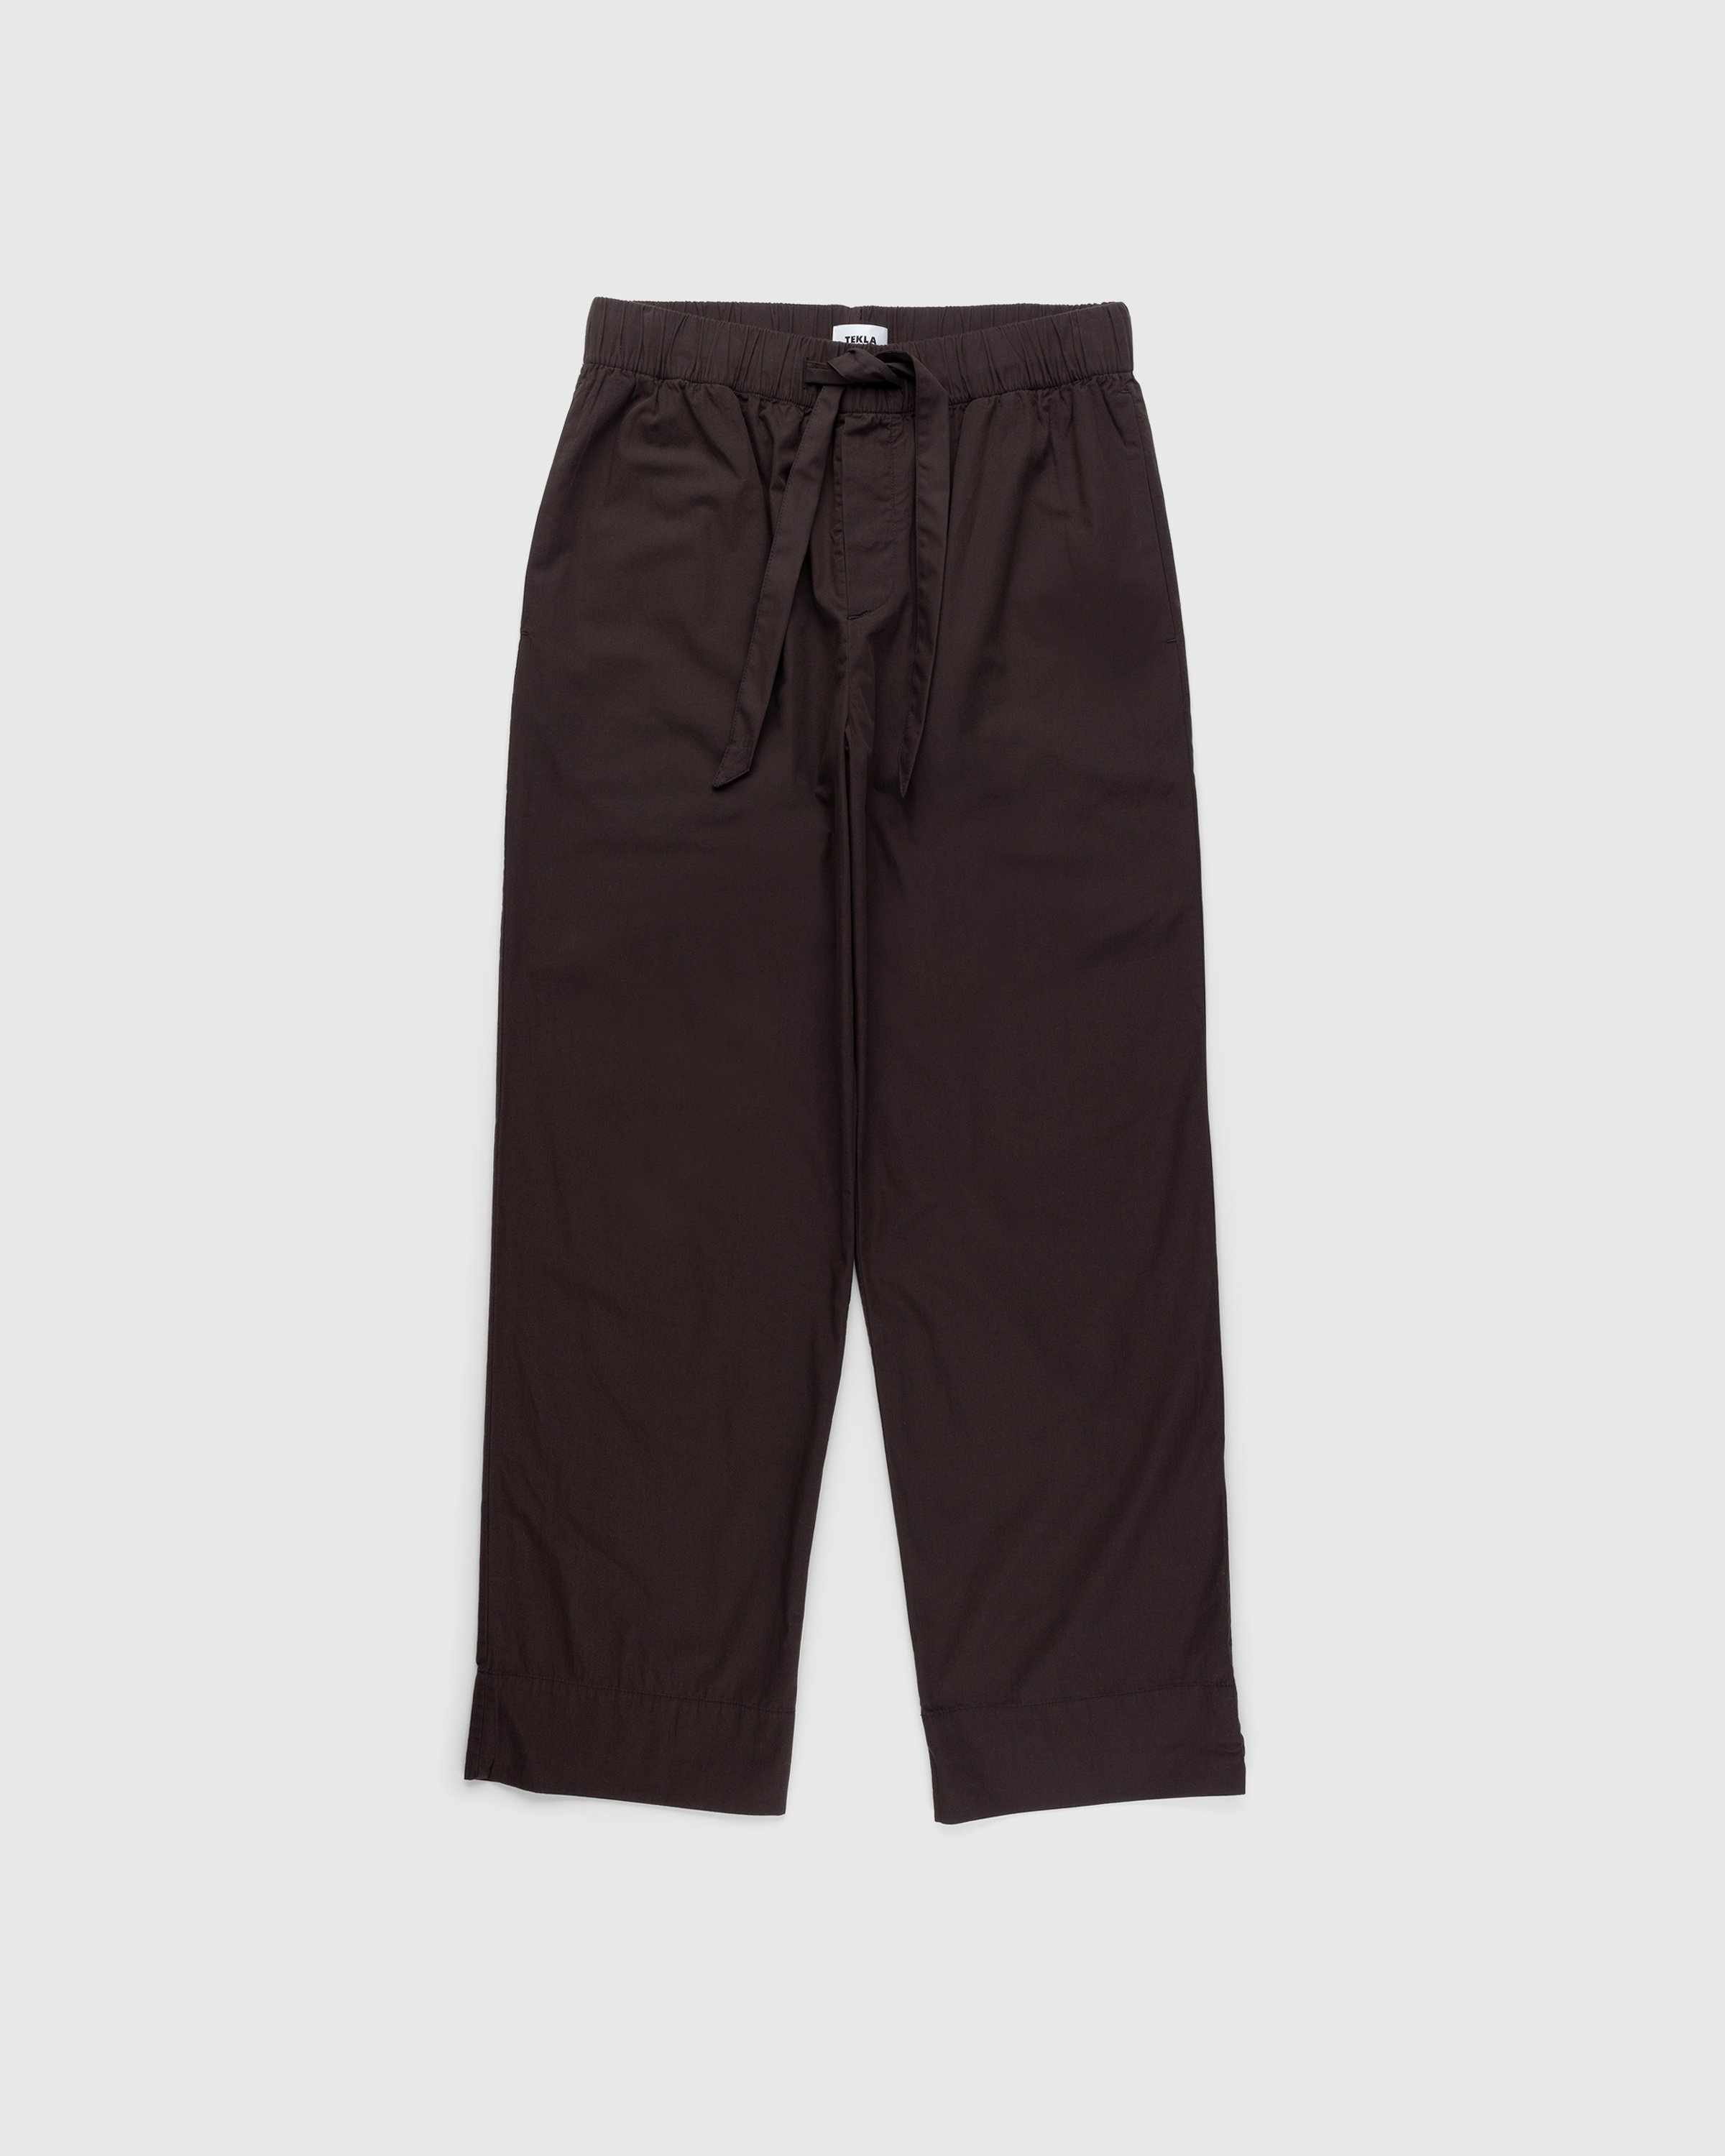 Tekla – Cotton Poplin Pyjamas Pants Coffee - Pyjamas - Brown - Image 1